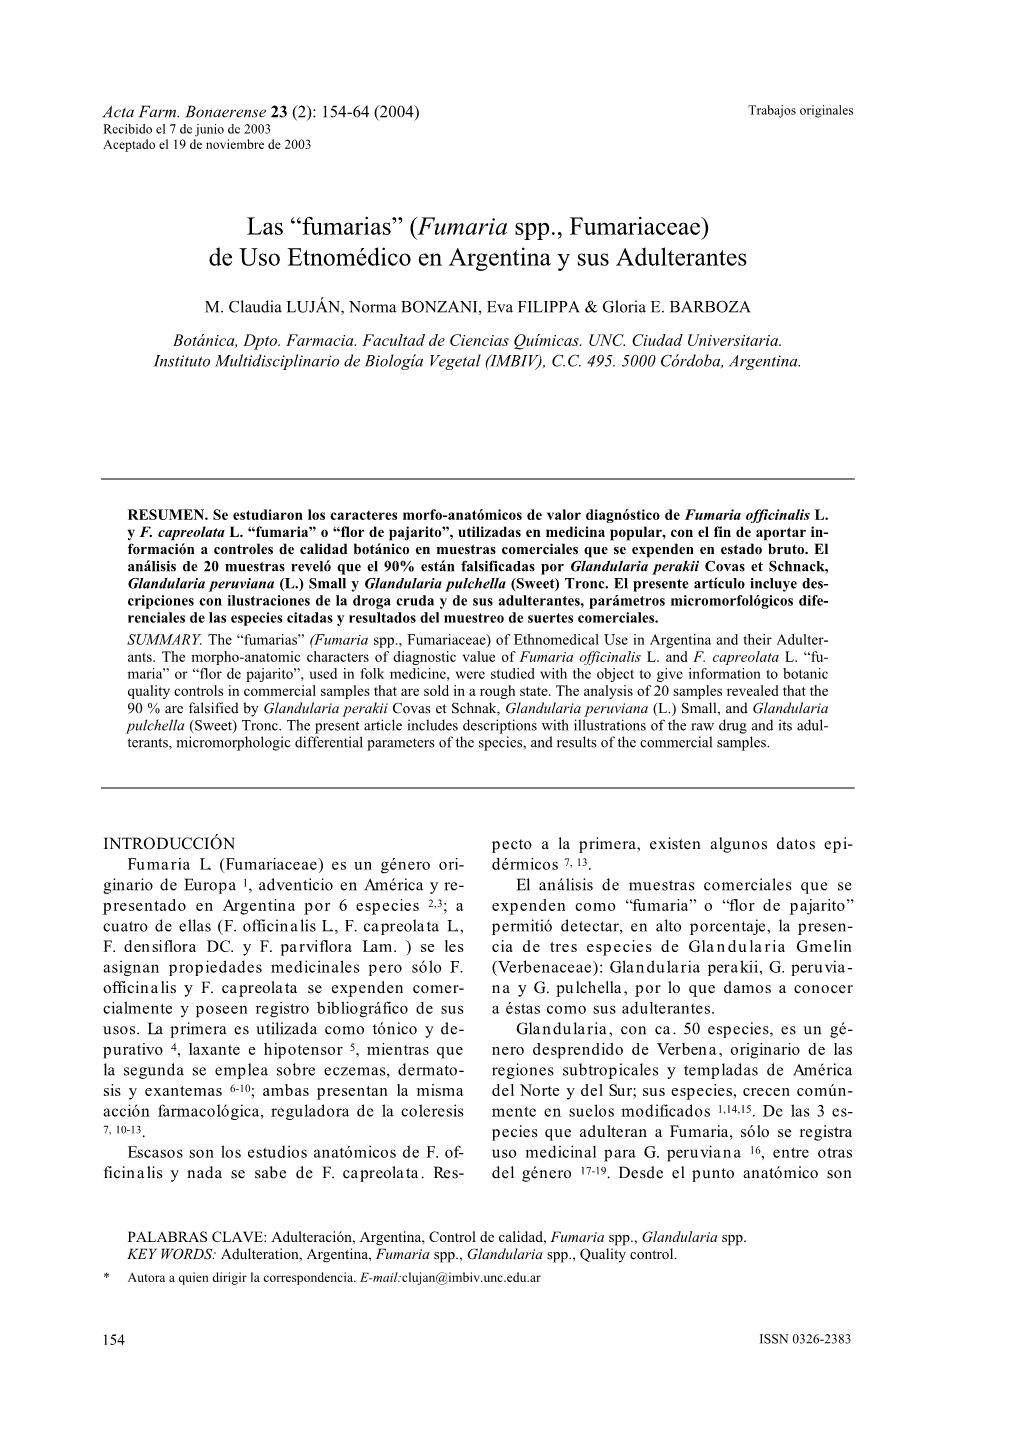 Fumaria Spp., Fumariaceae) De Uso Etnomédico En Argentina Y Sus Adulterantes